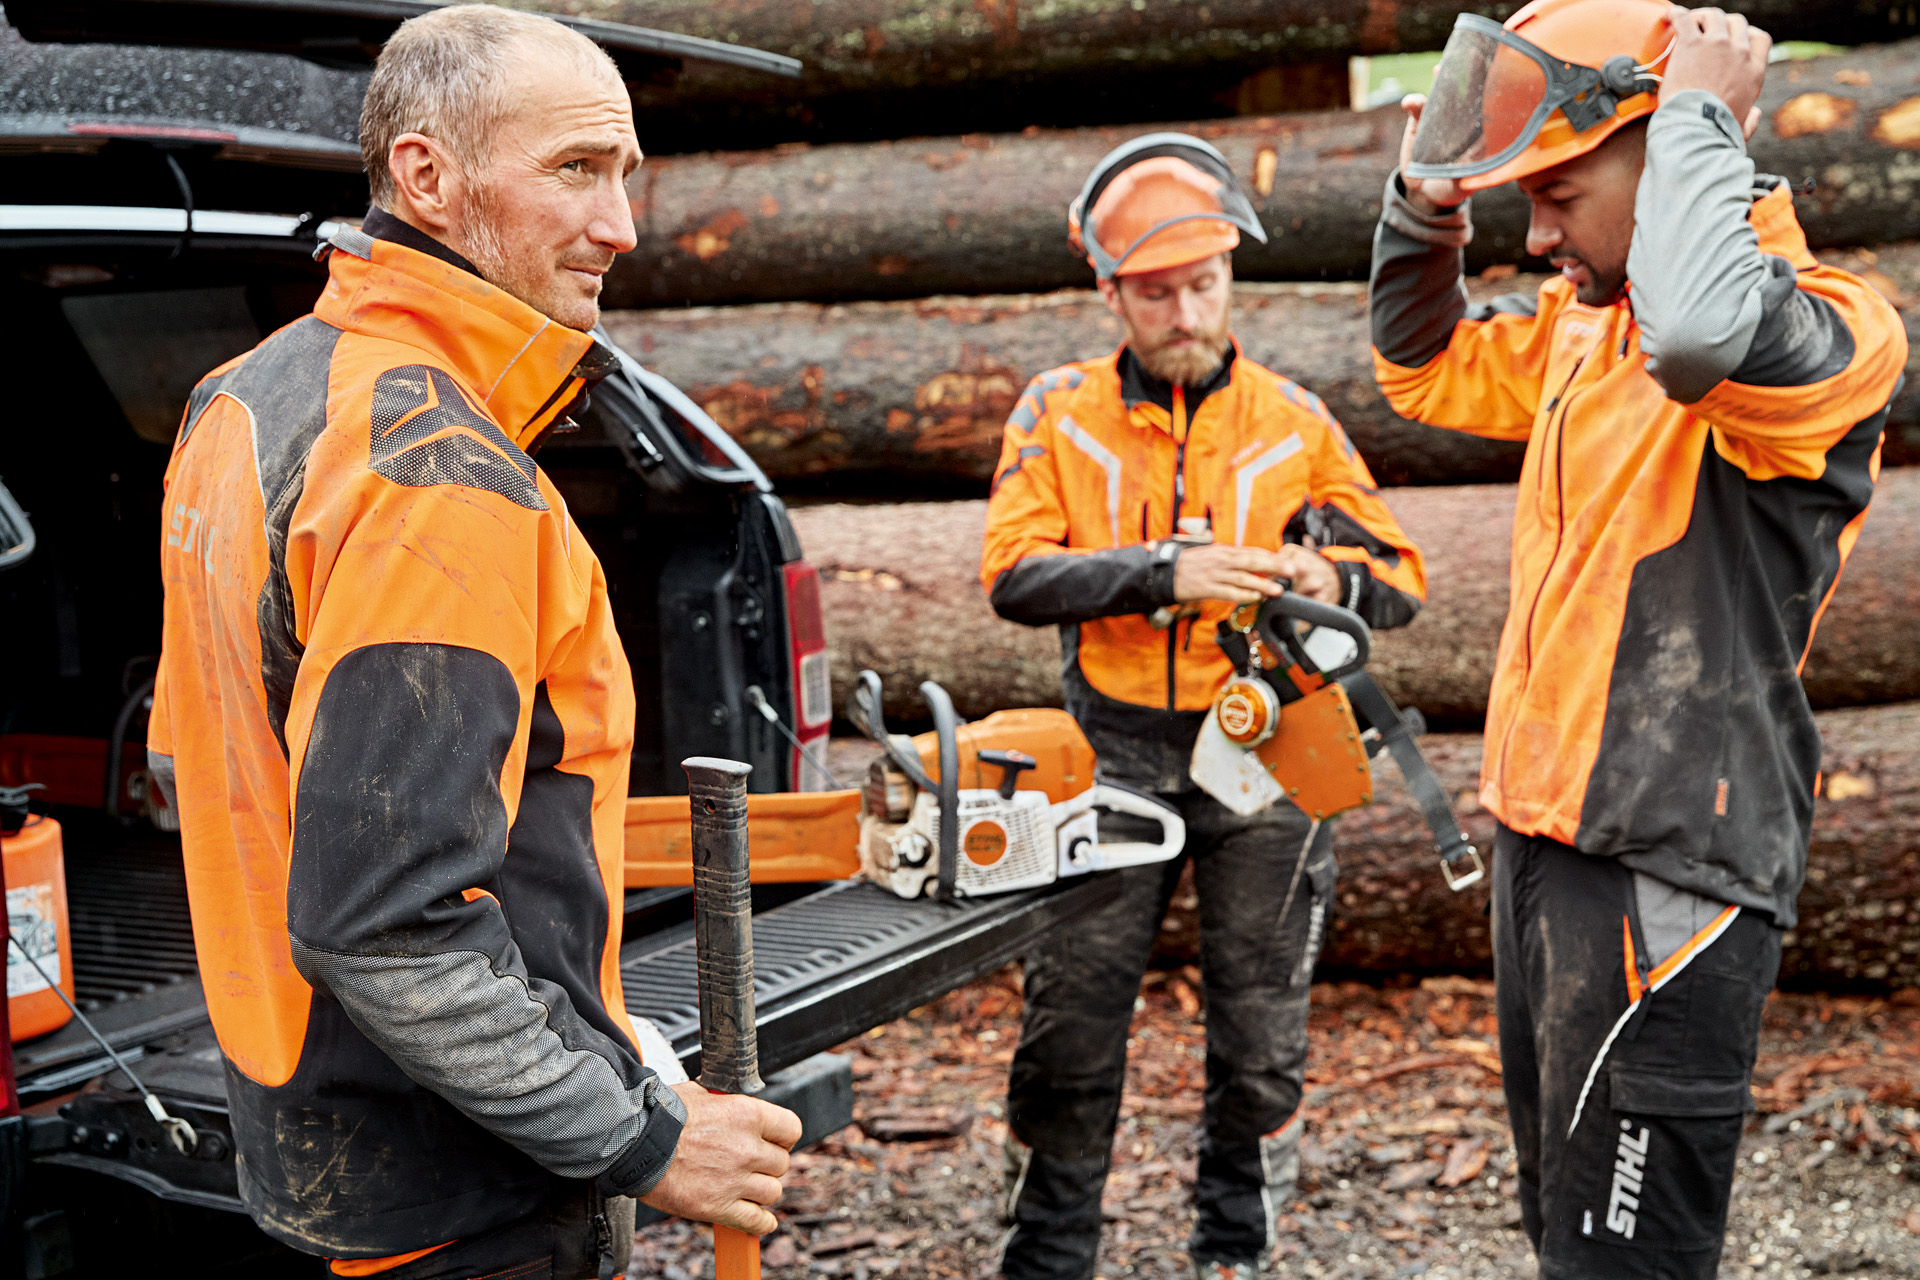 Tres trabajadores forestales con equipamiento de protección individual se preparan delante de unos troncos en el bosque